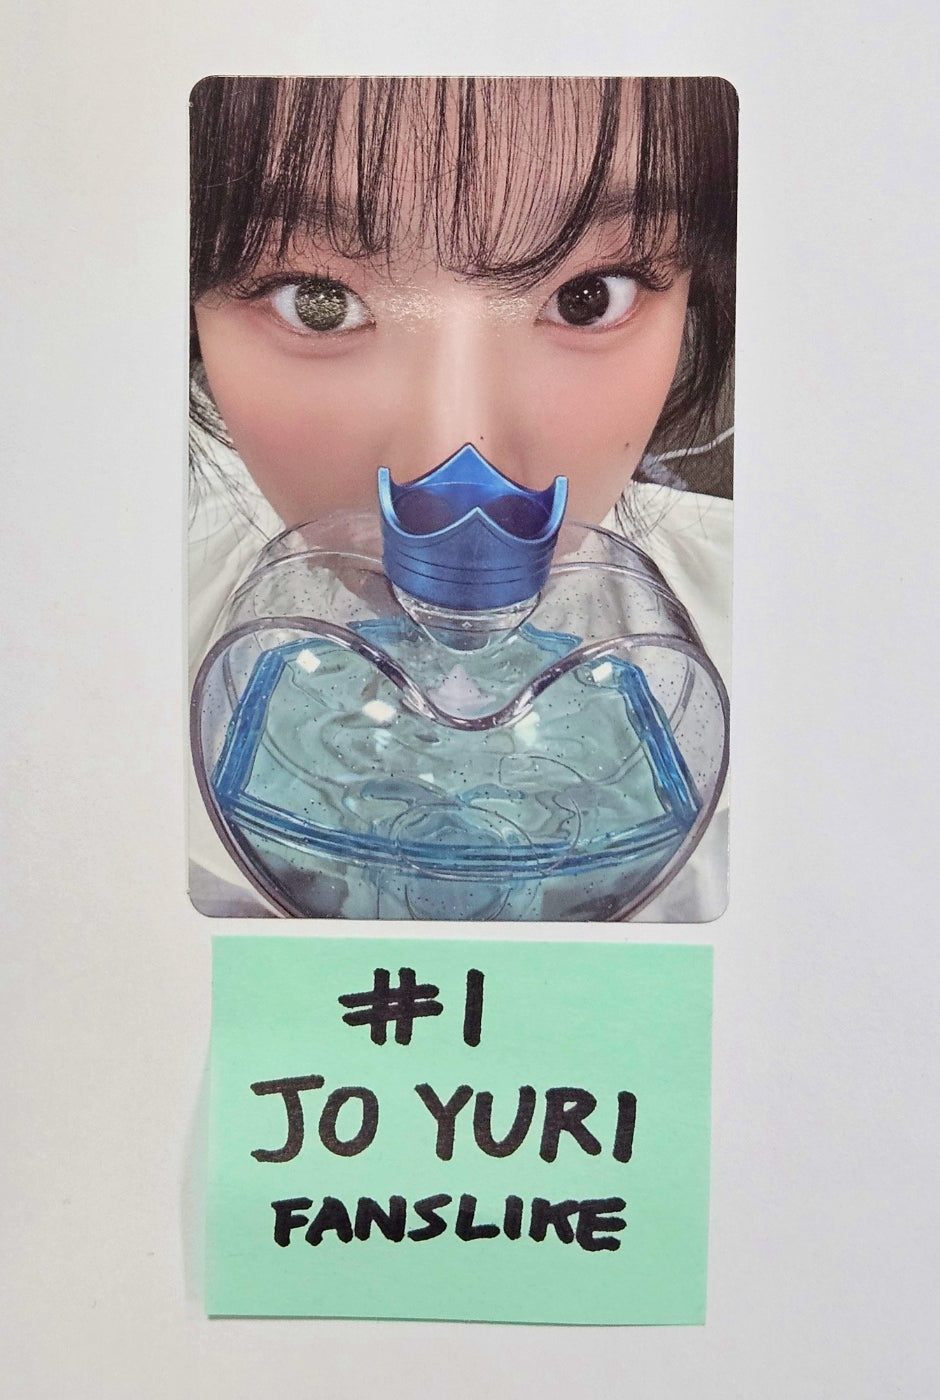 JO YURI - 公式ライトスティック ファンライク予約特典フォトカード [24.1.23]